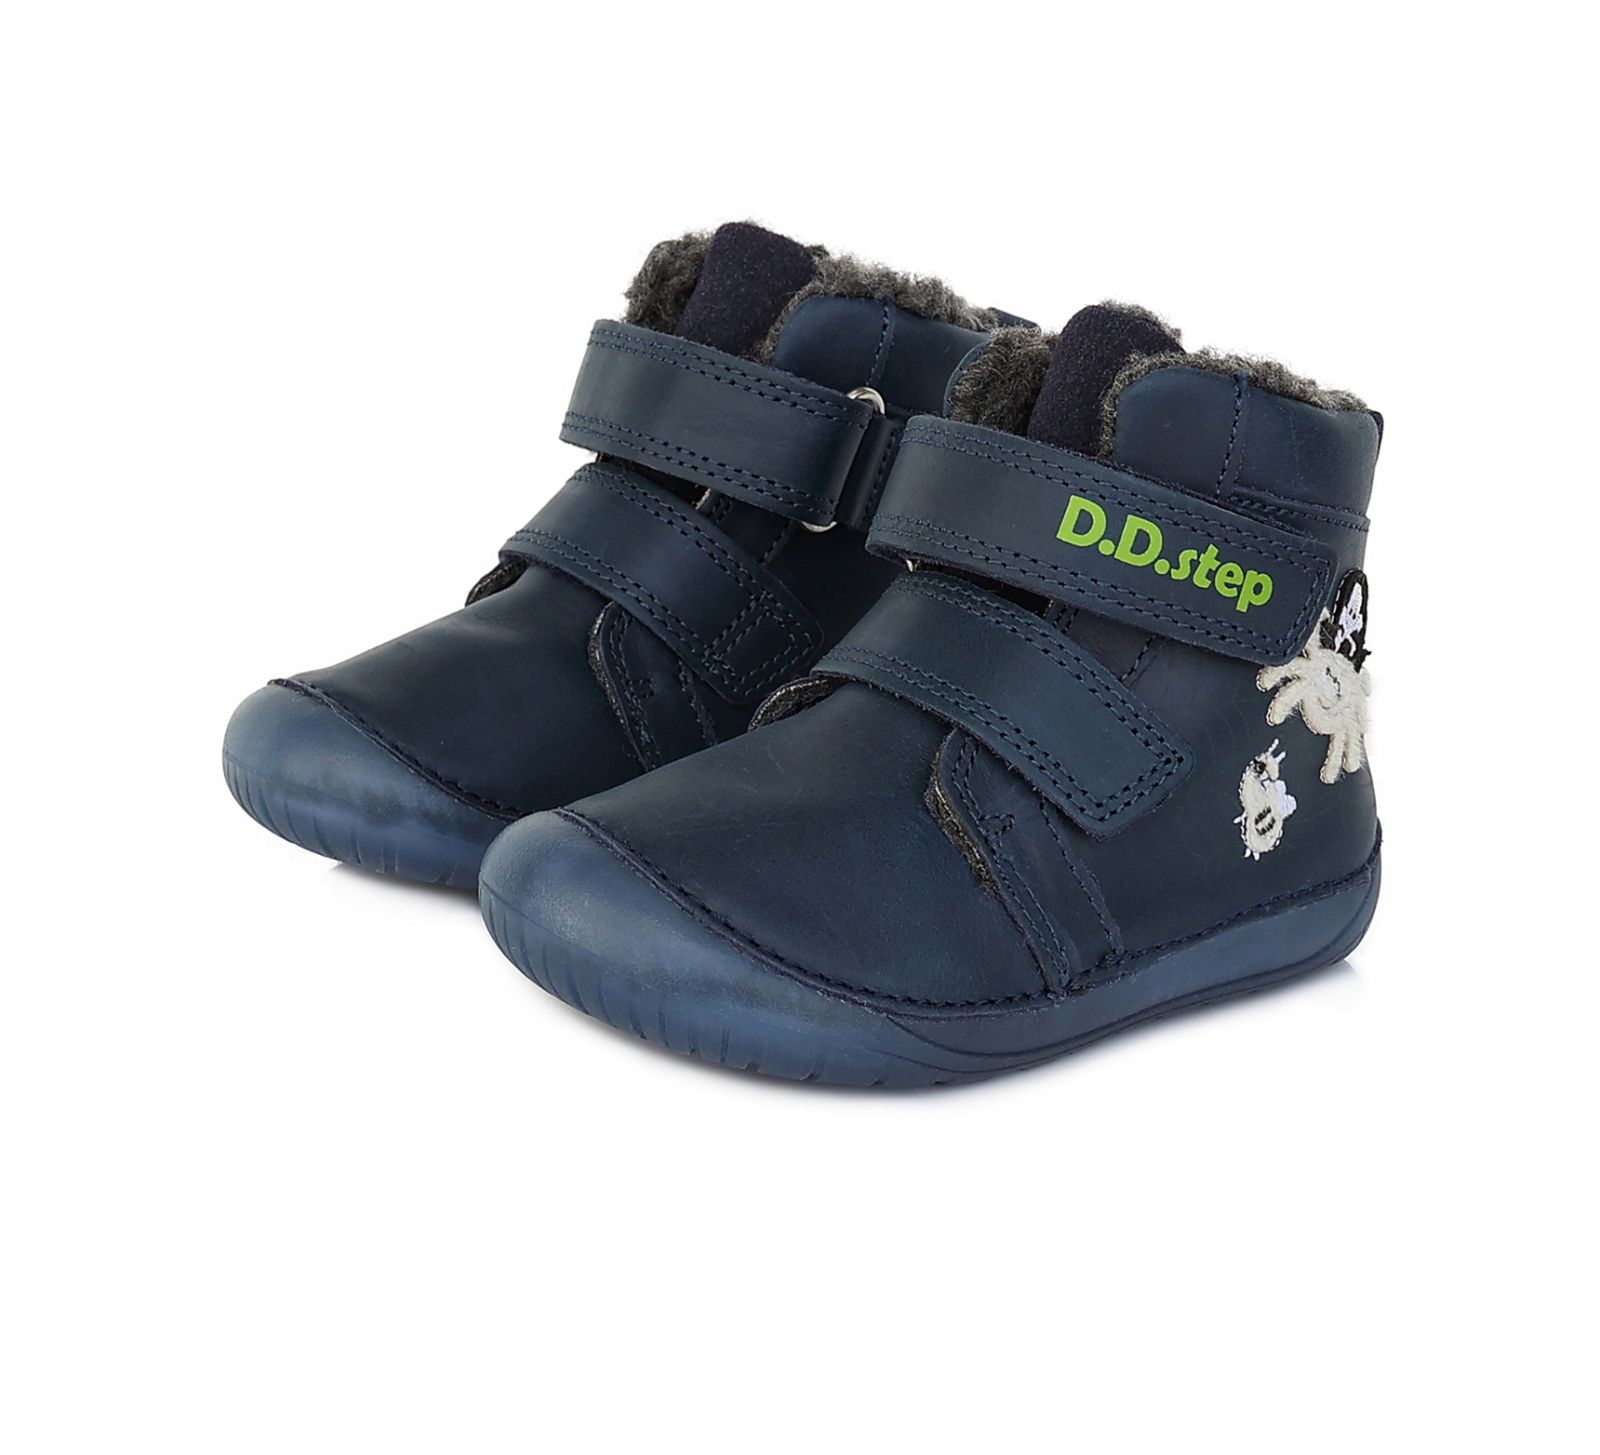 Zimné topánky DDstep 070 - modré - pavúk